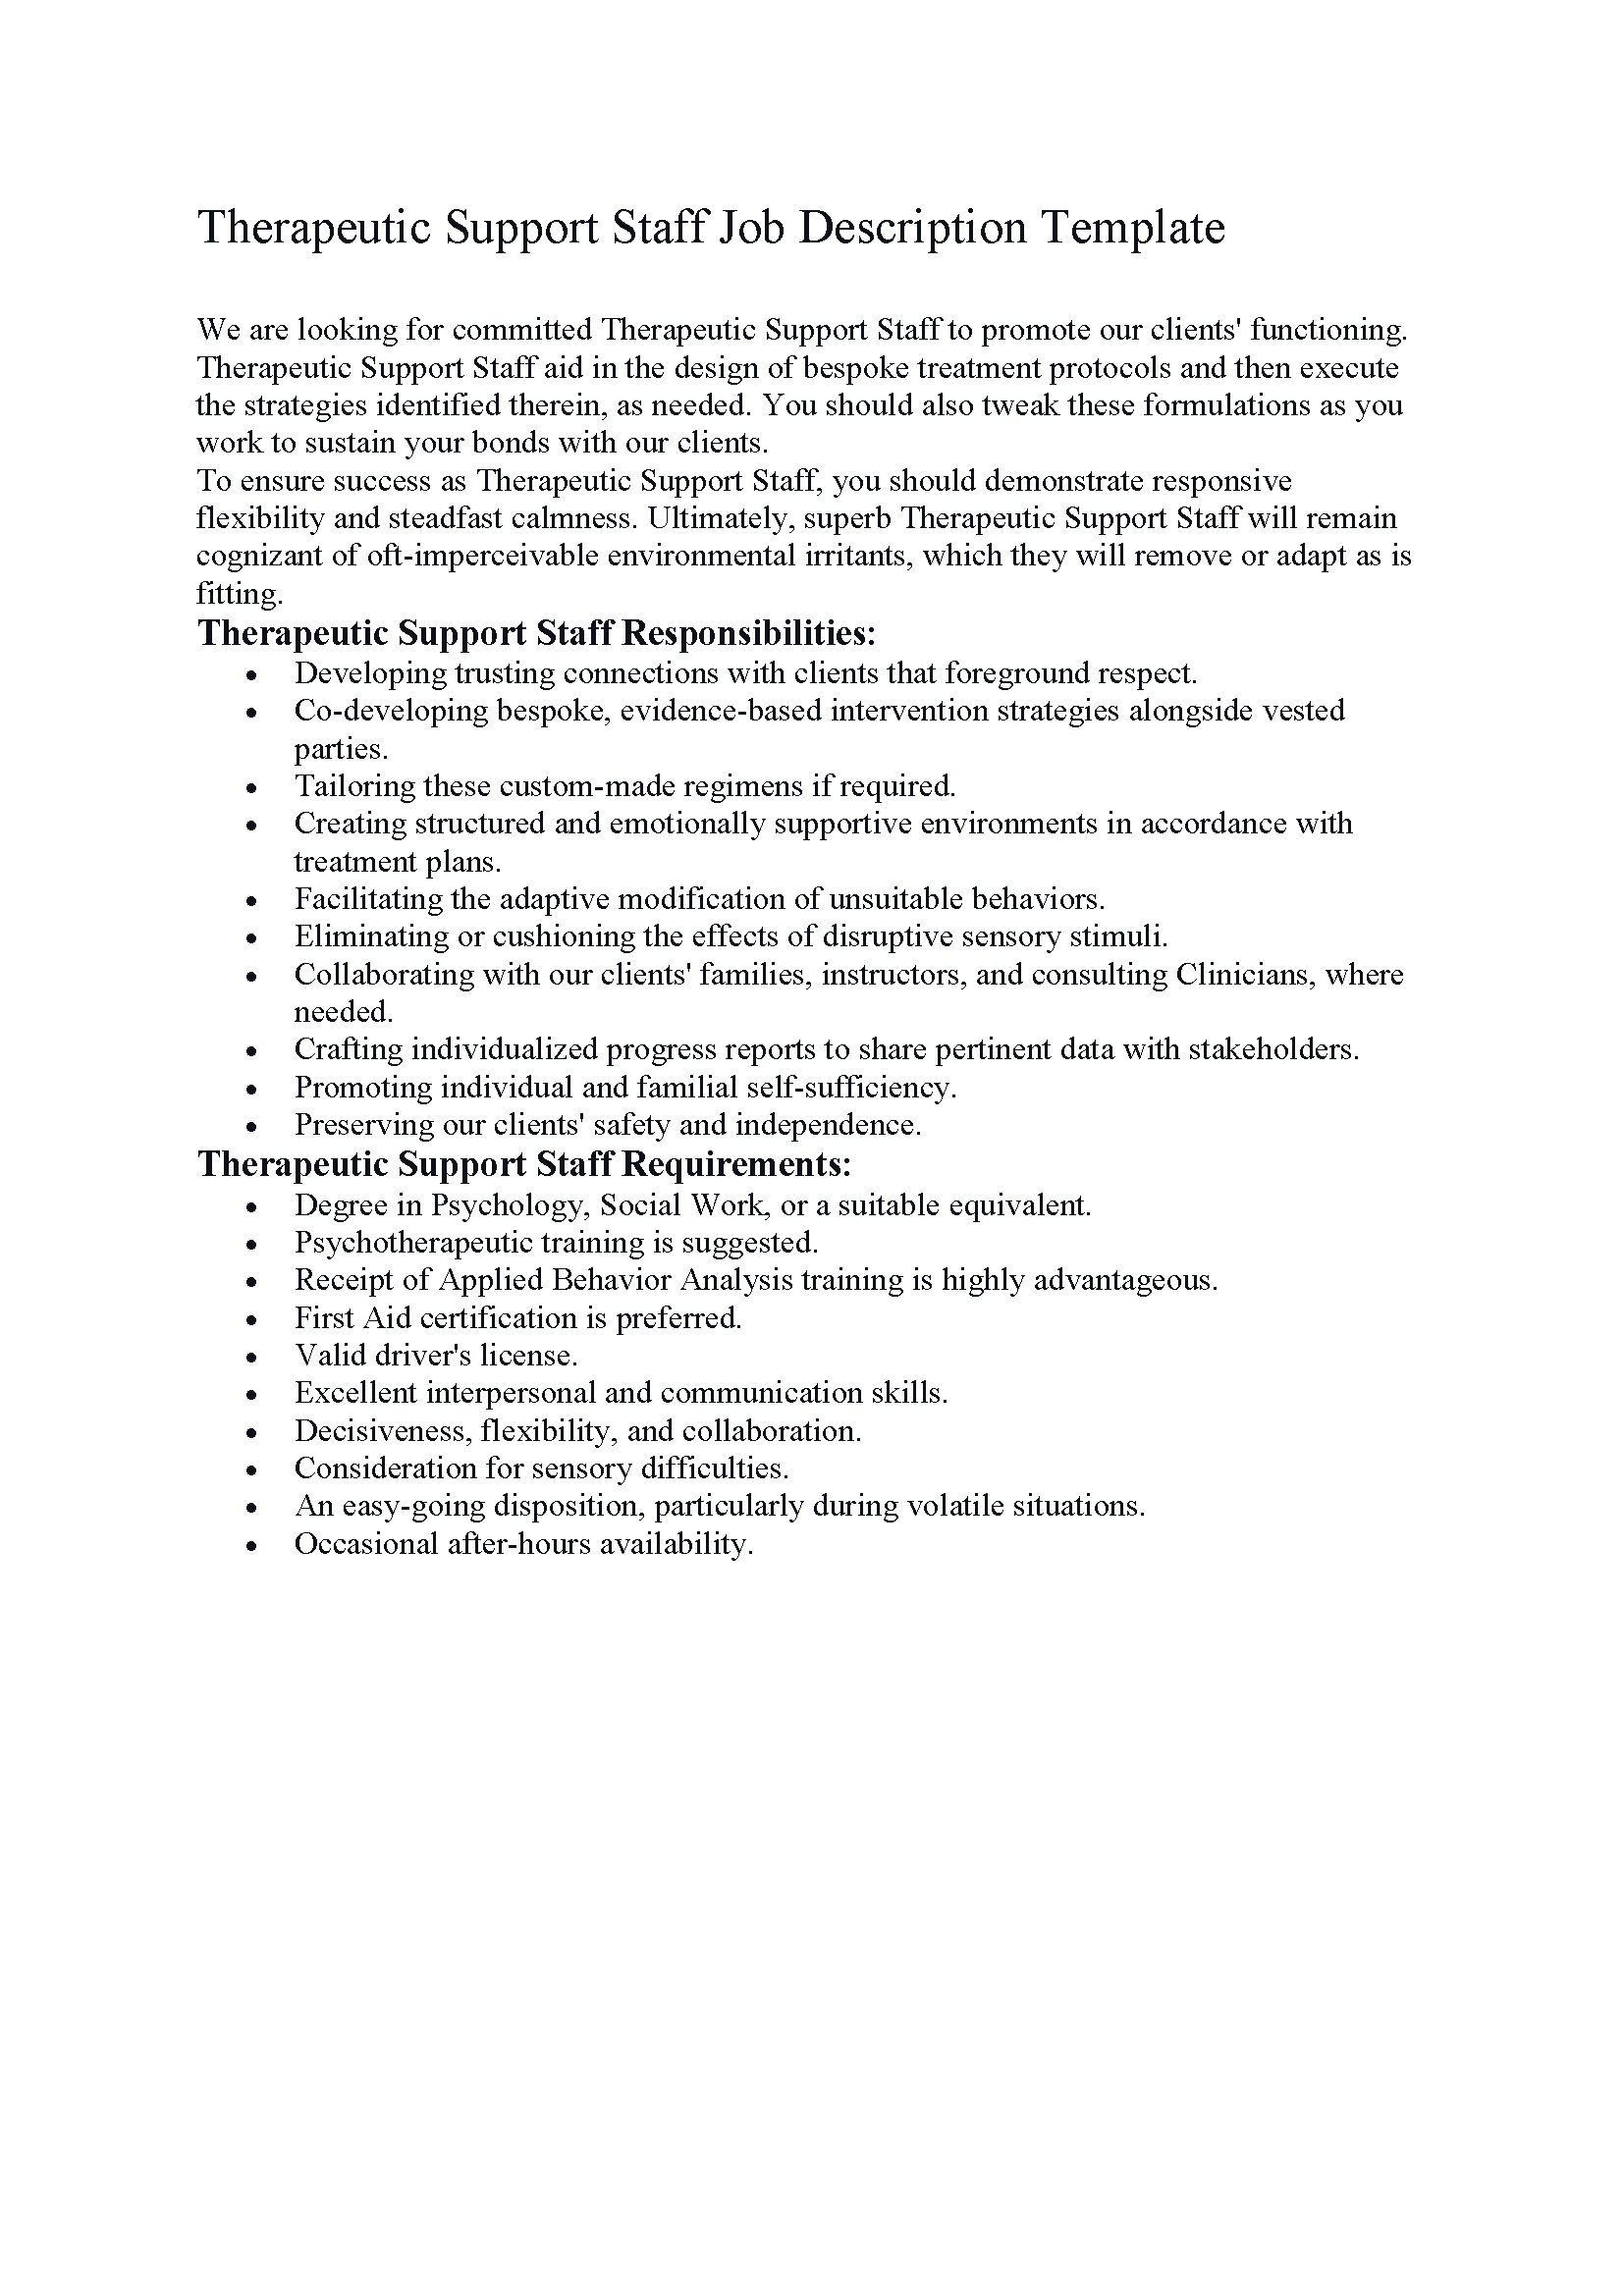 Therapeutic Support Staff Job Description Template